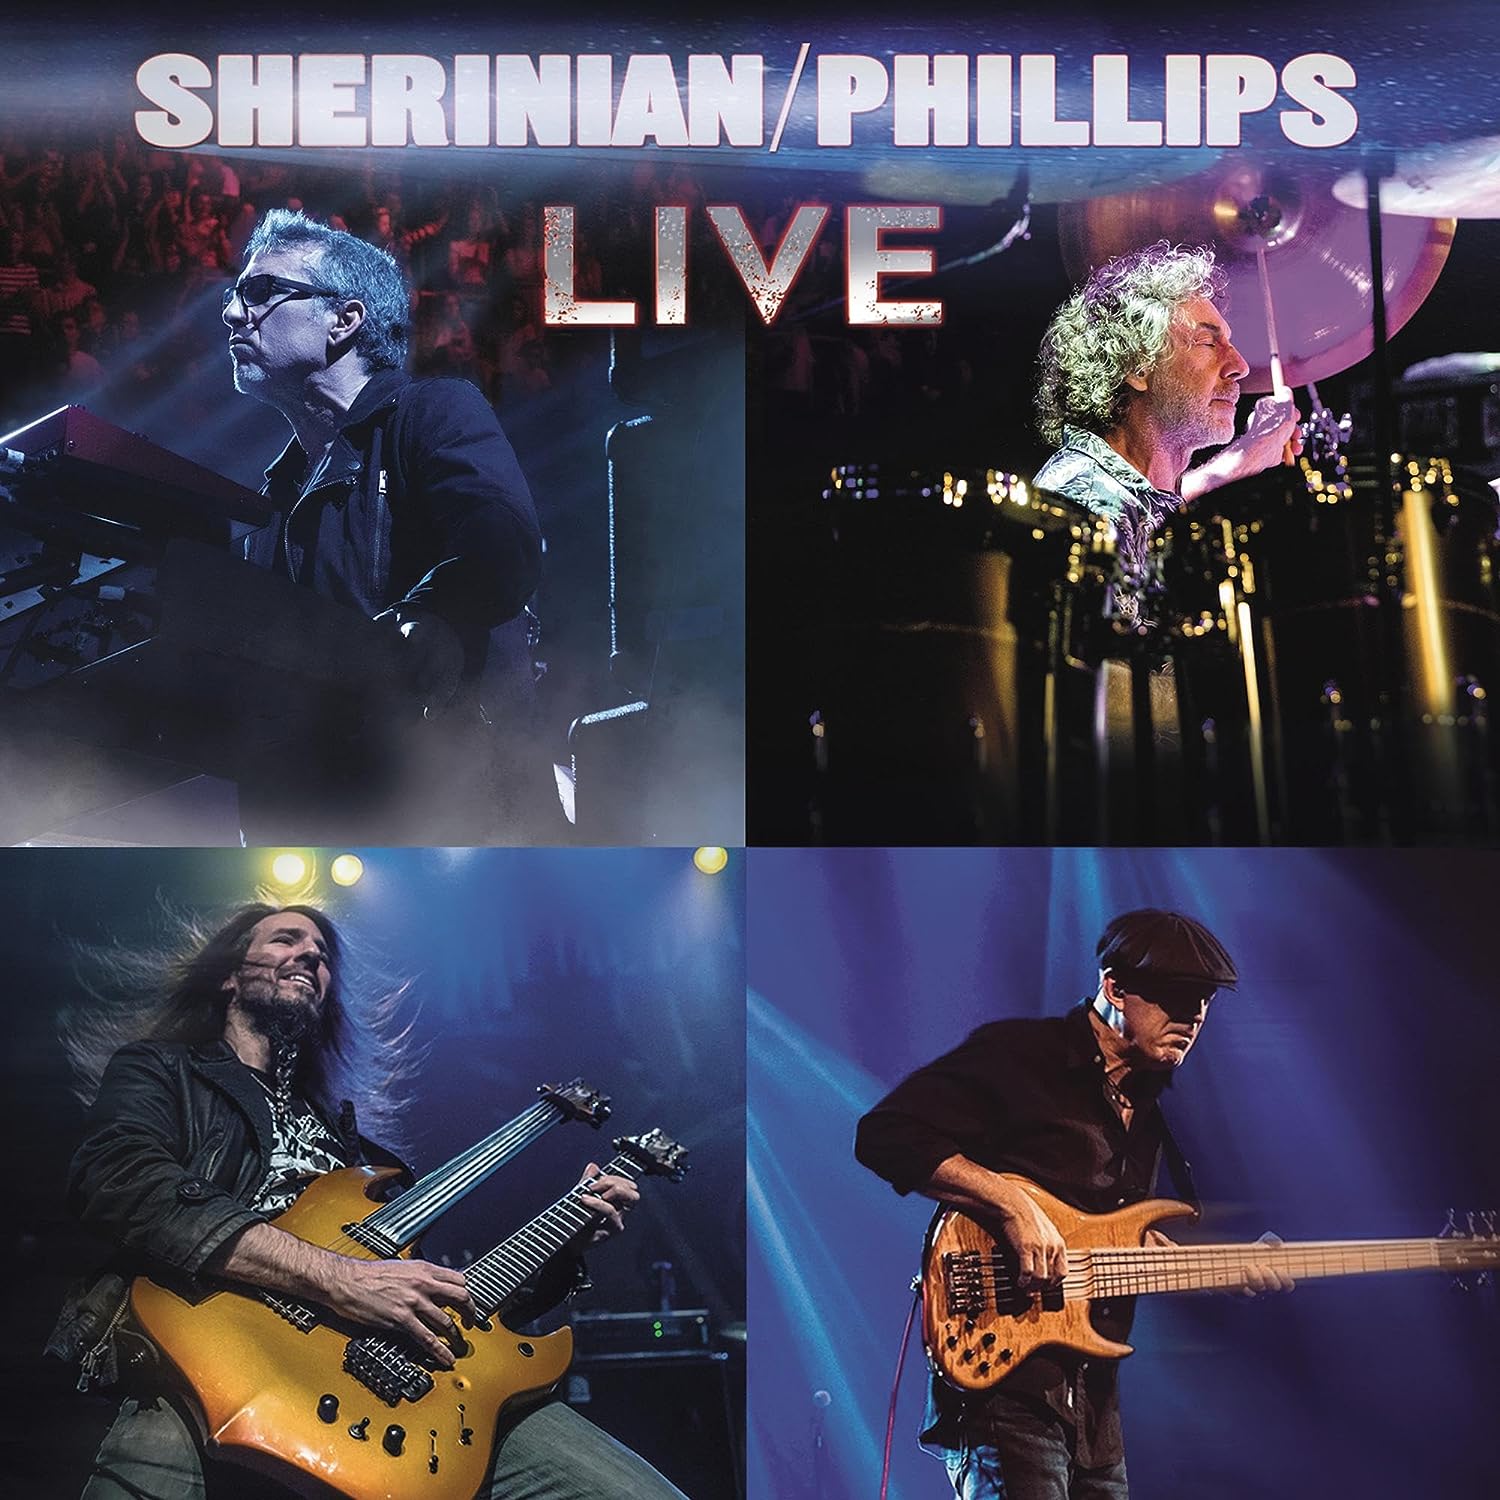 デレク・シェリニアン / SHERINIAN / PHILLIPS LIVE (LP)